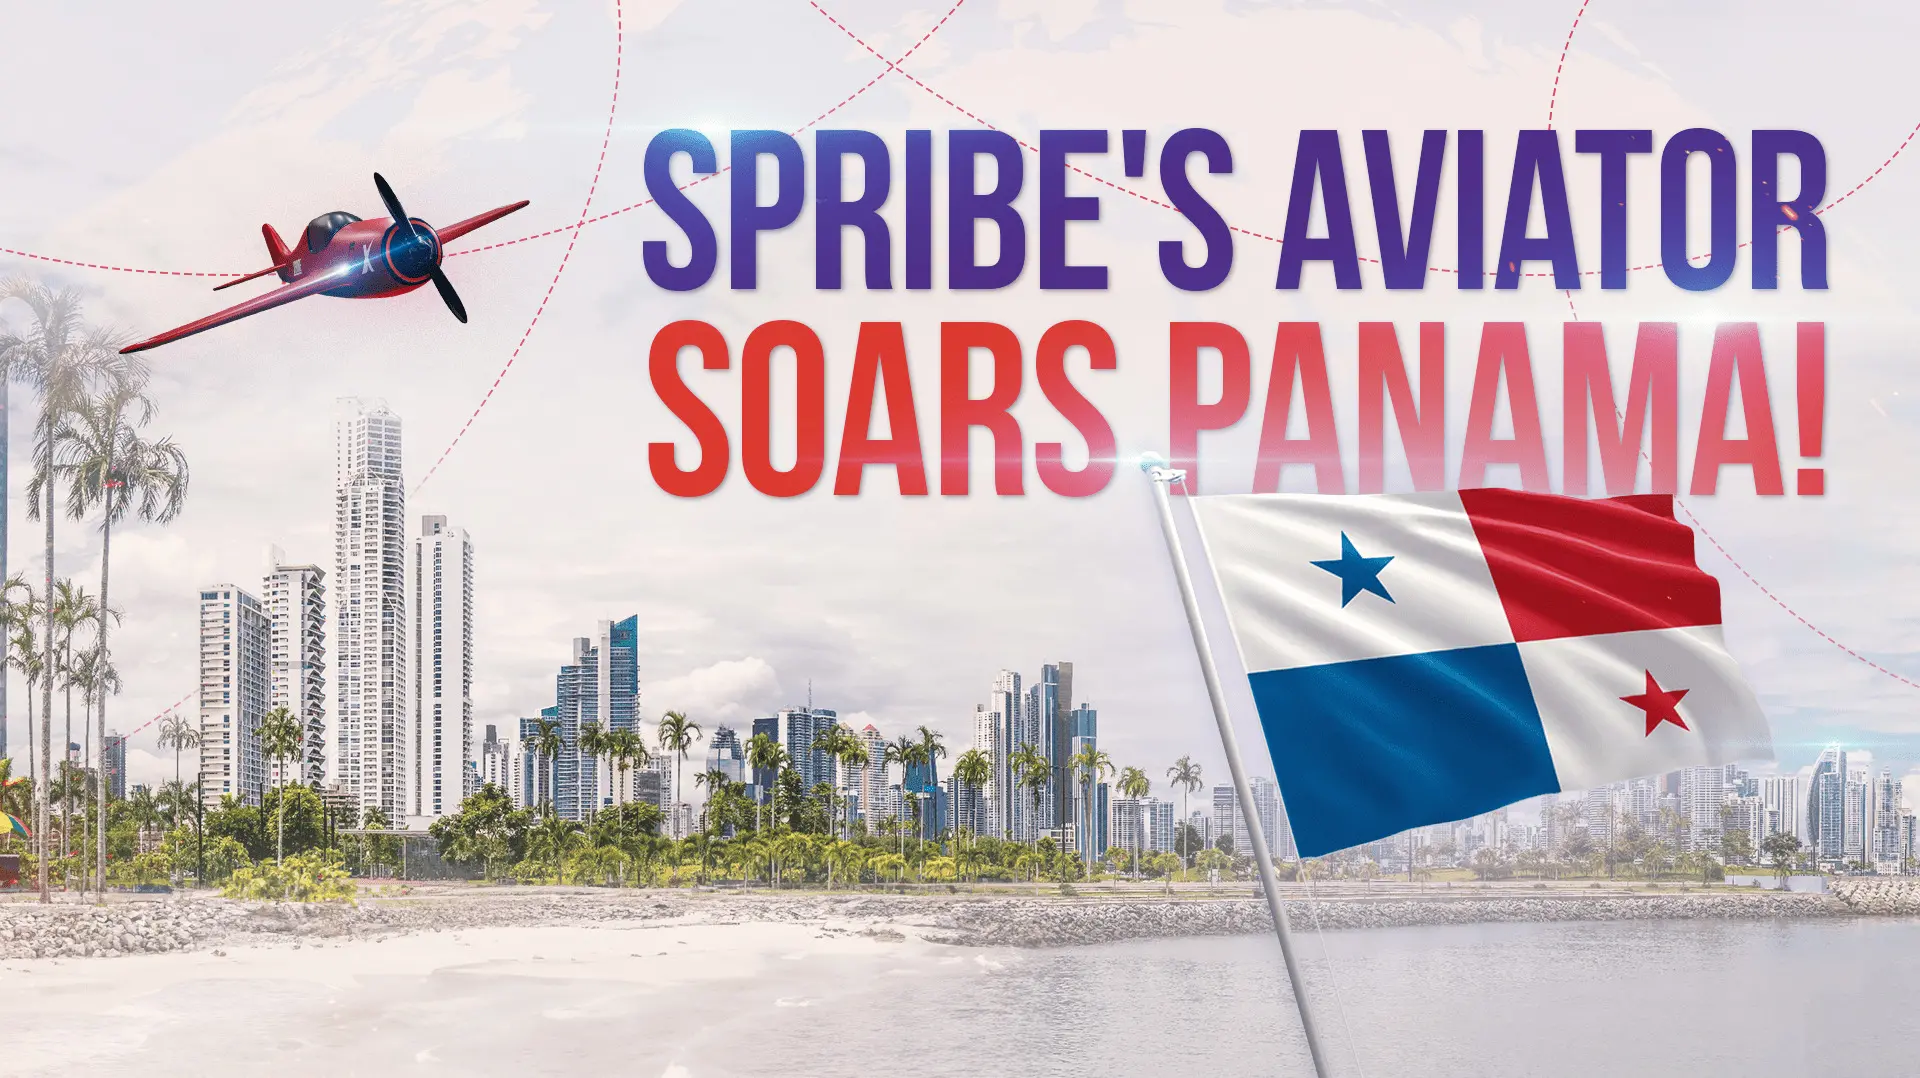 Az Aviator Panamaban debutal amikor a SPRIBE megkapta a hatosagi jpg